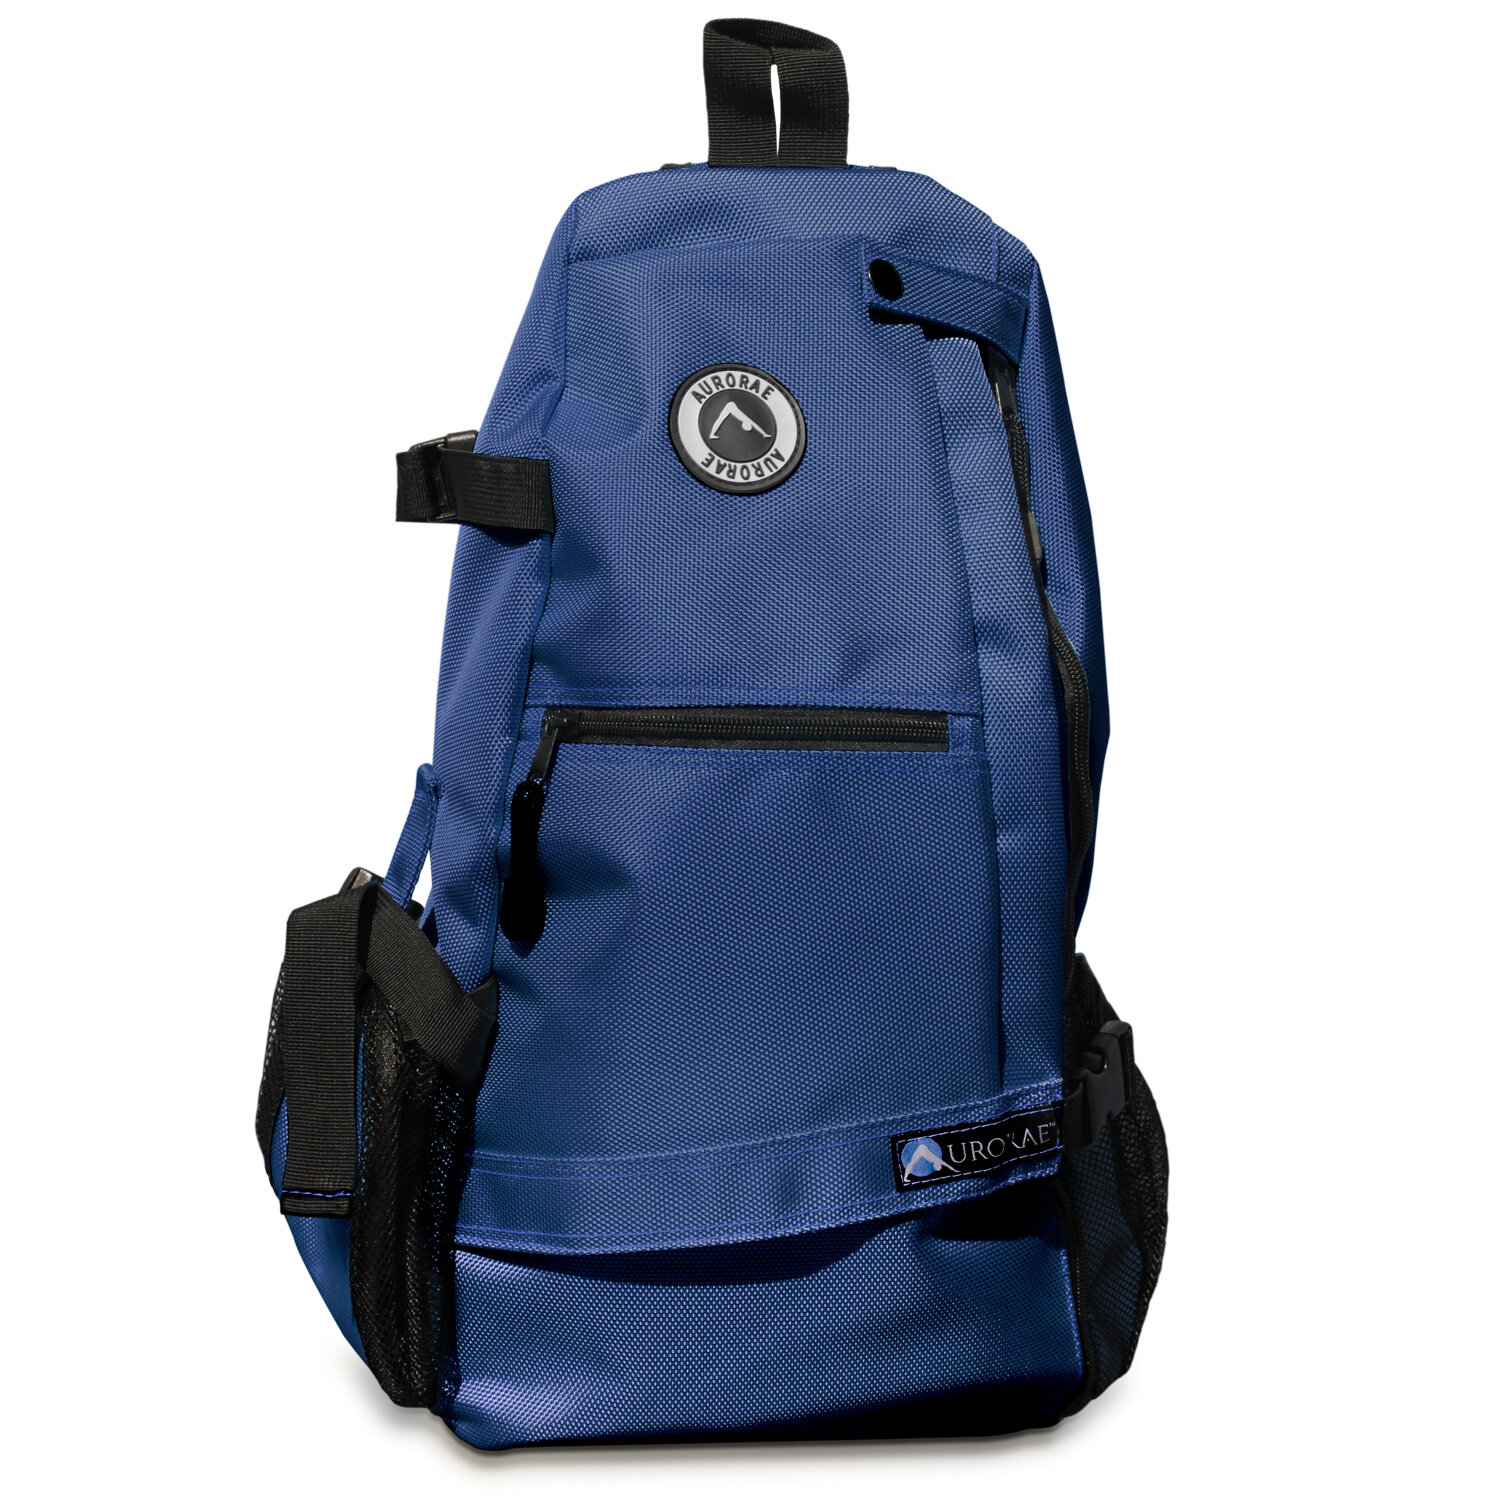 sportbag-1500-blue-01.jpg